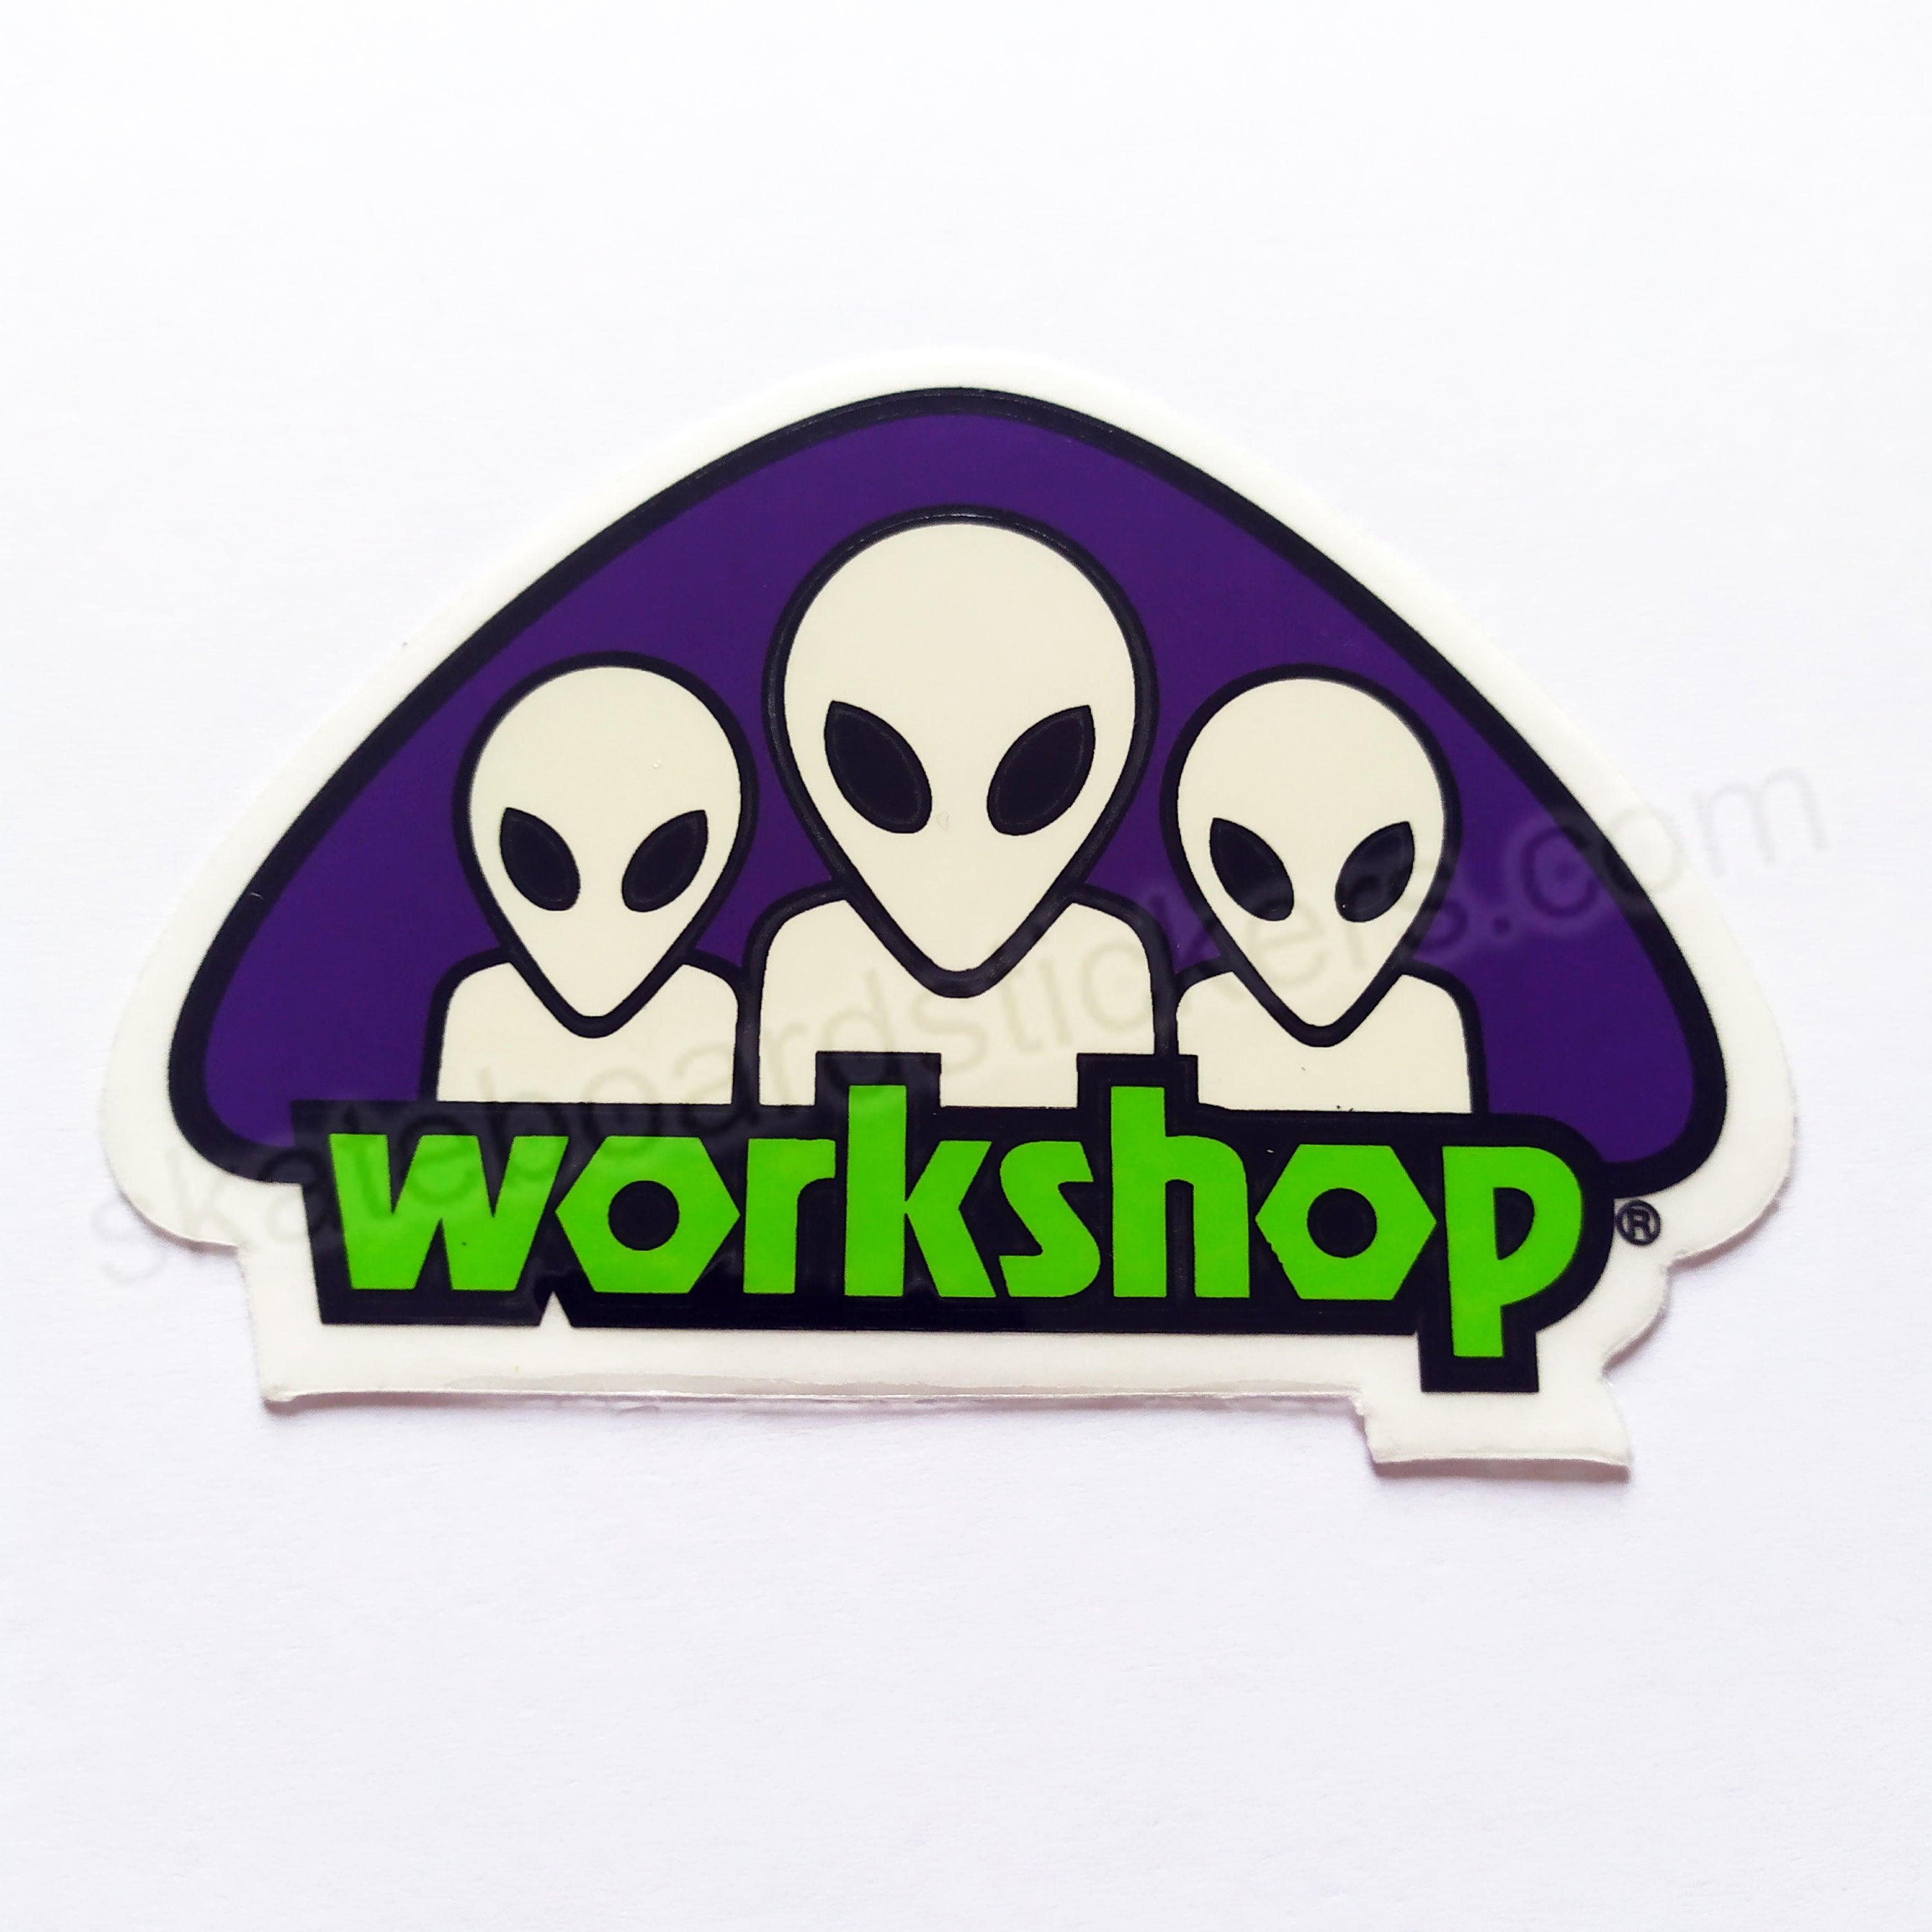 Alien Workshop Skateboard Sticker - Triad - 8.5cm across approx - SkateboardStickers.com